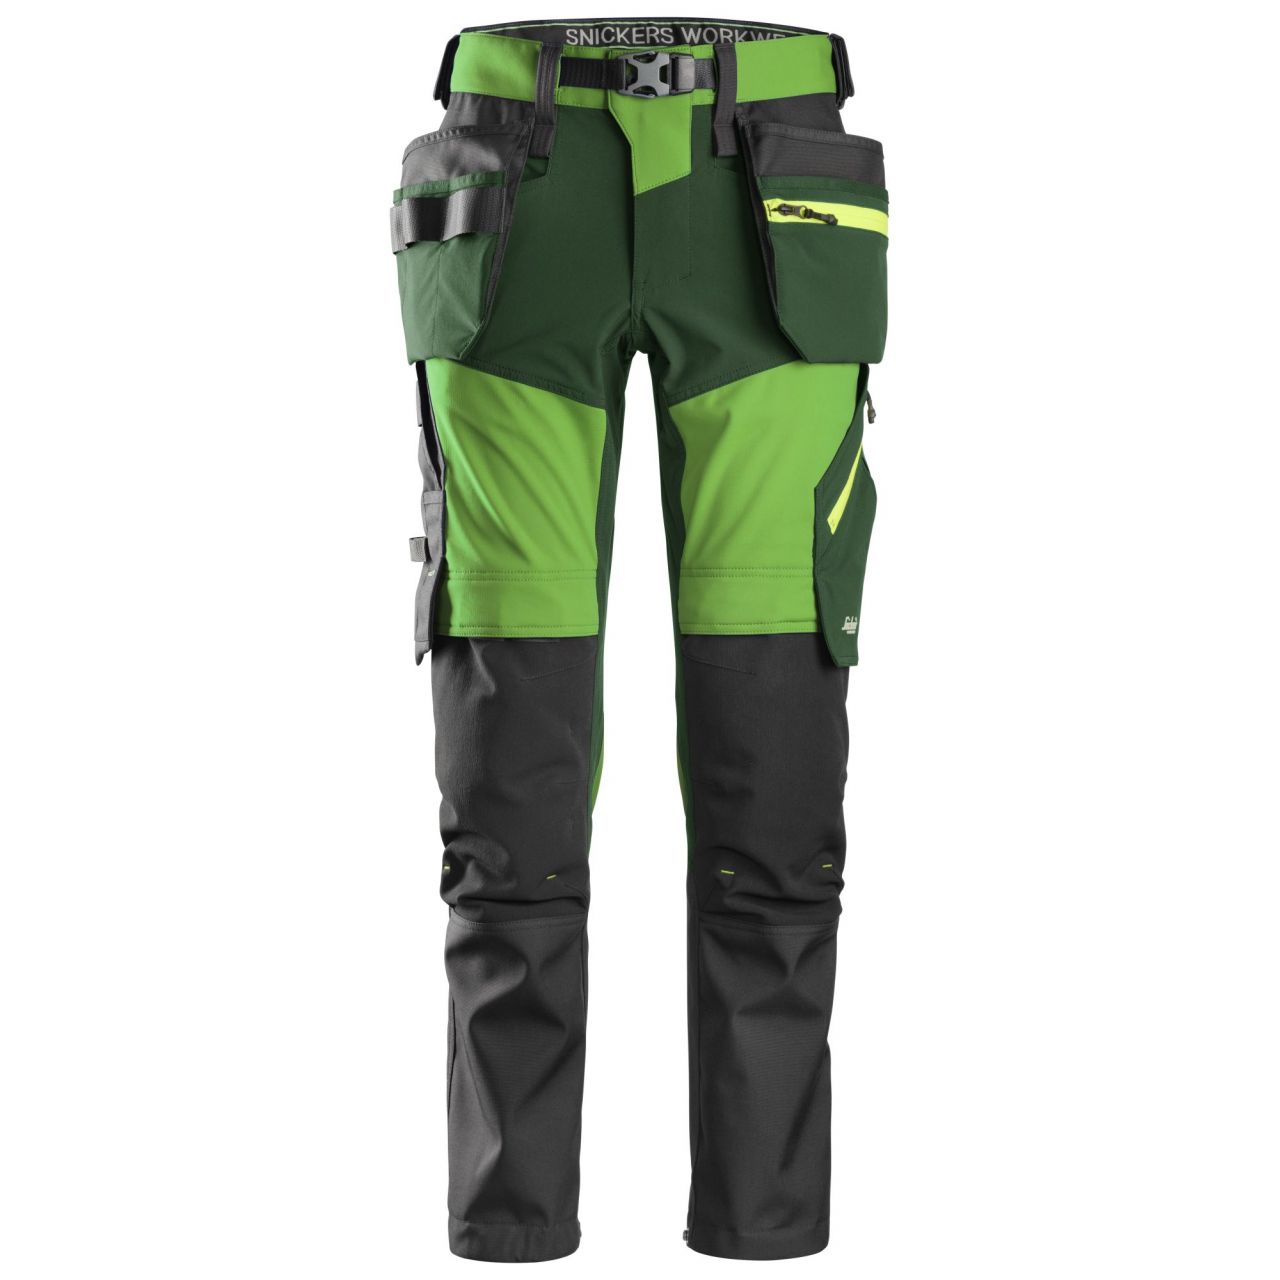 Pantalón FlexiWork Softshell elástico con bolsillos flotantes Verde Manzana/Verde Bosque talla 154